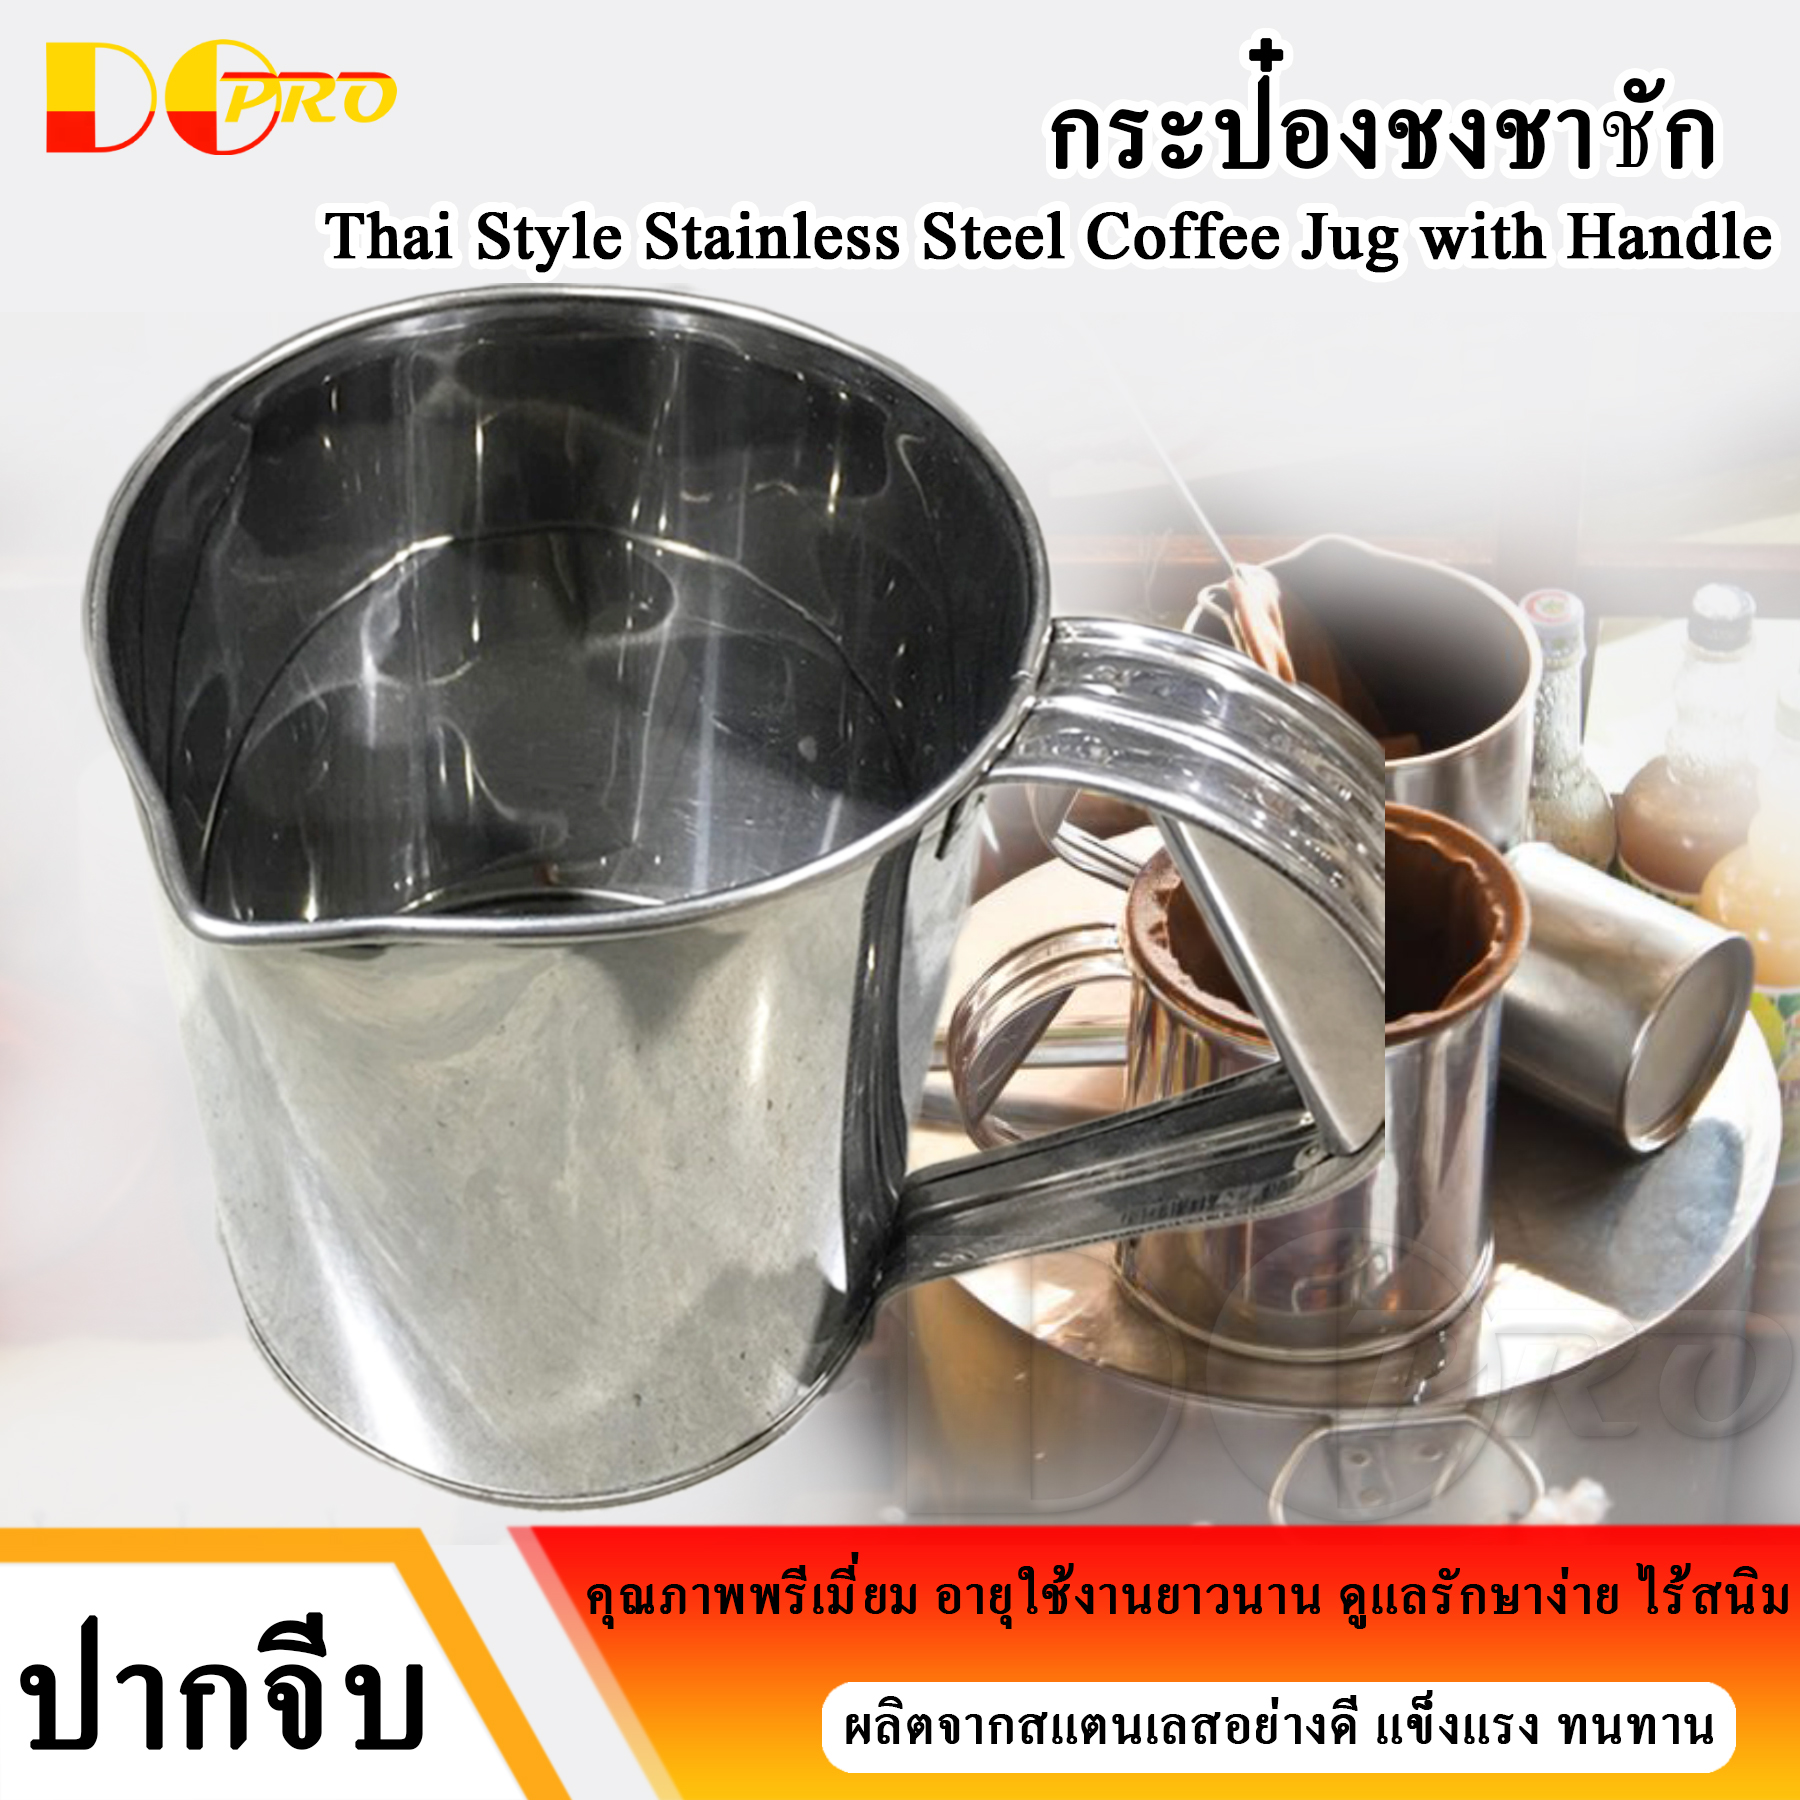 กระป๋องชงกาแฟ กระป๋องชงชา ชาชัก กระป๋องชาชัก ที่ชงชาชัก รุ่นใหม่ สแตนเลสเนื้อหนาพิเศษ ทนทาน ใช้งานยาว Stainless Steel Coffee Jug, Coffee Pot, Thai Tea and Coffee Manual Pot / Big Size